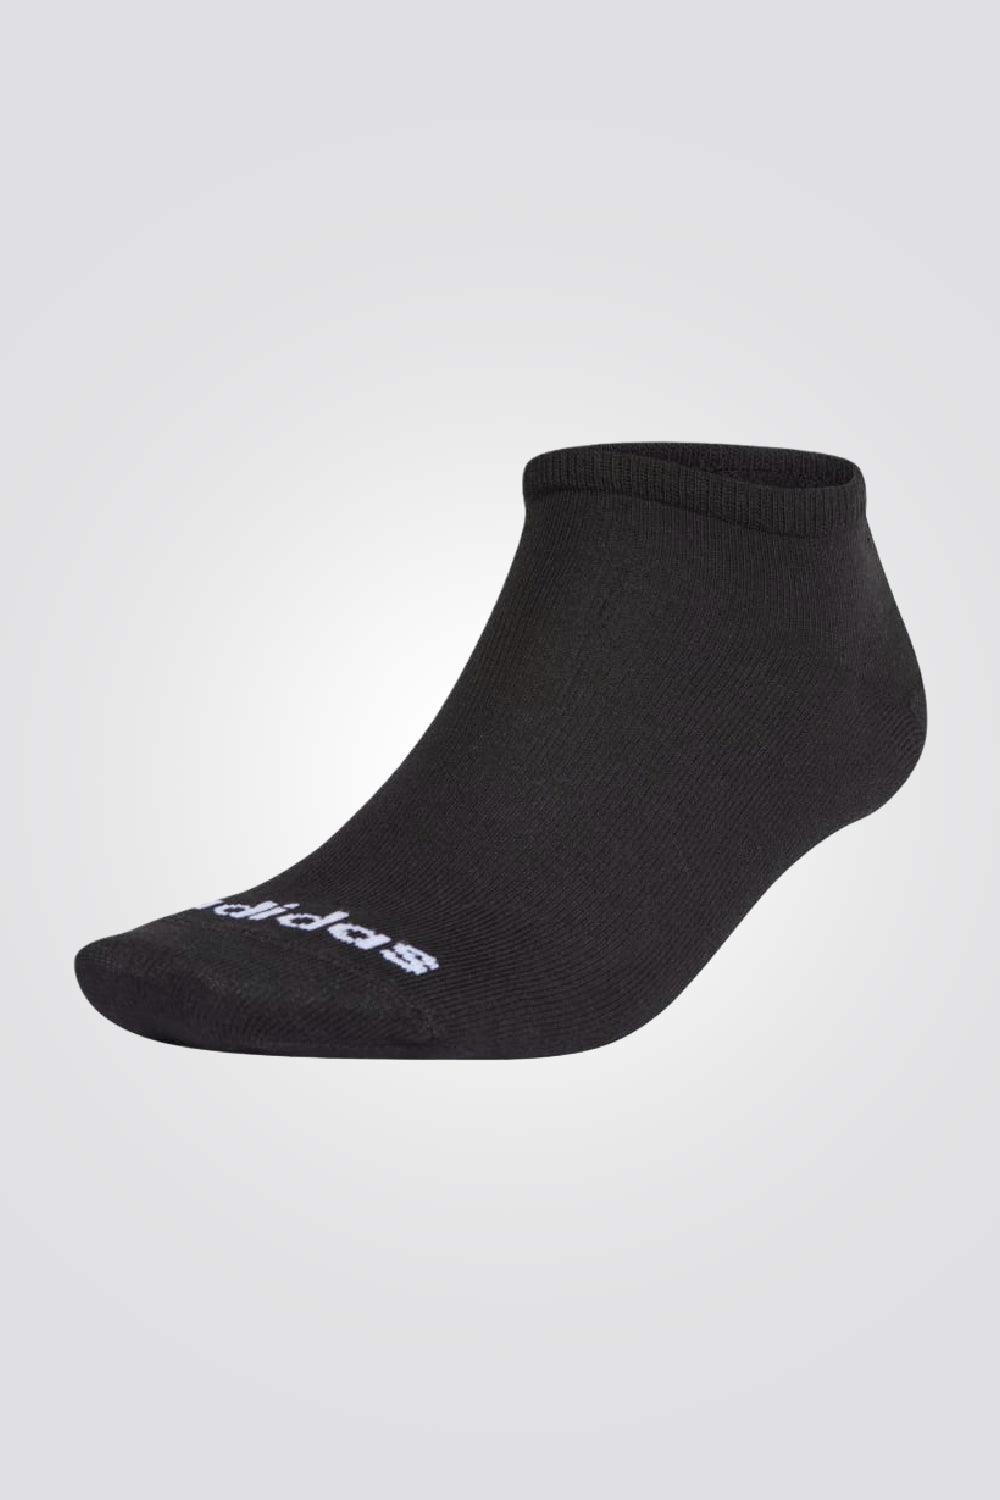 ADIDAS - שלישיית גרביים Low Cut בצבע שחור - MASHBIR//365